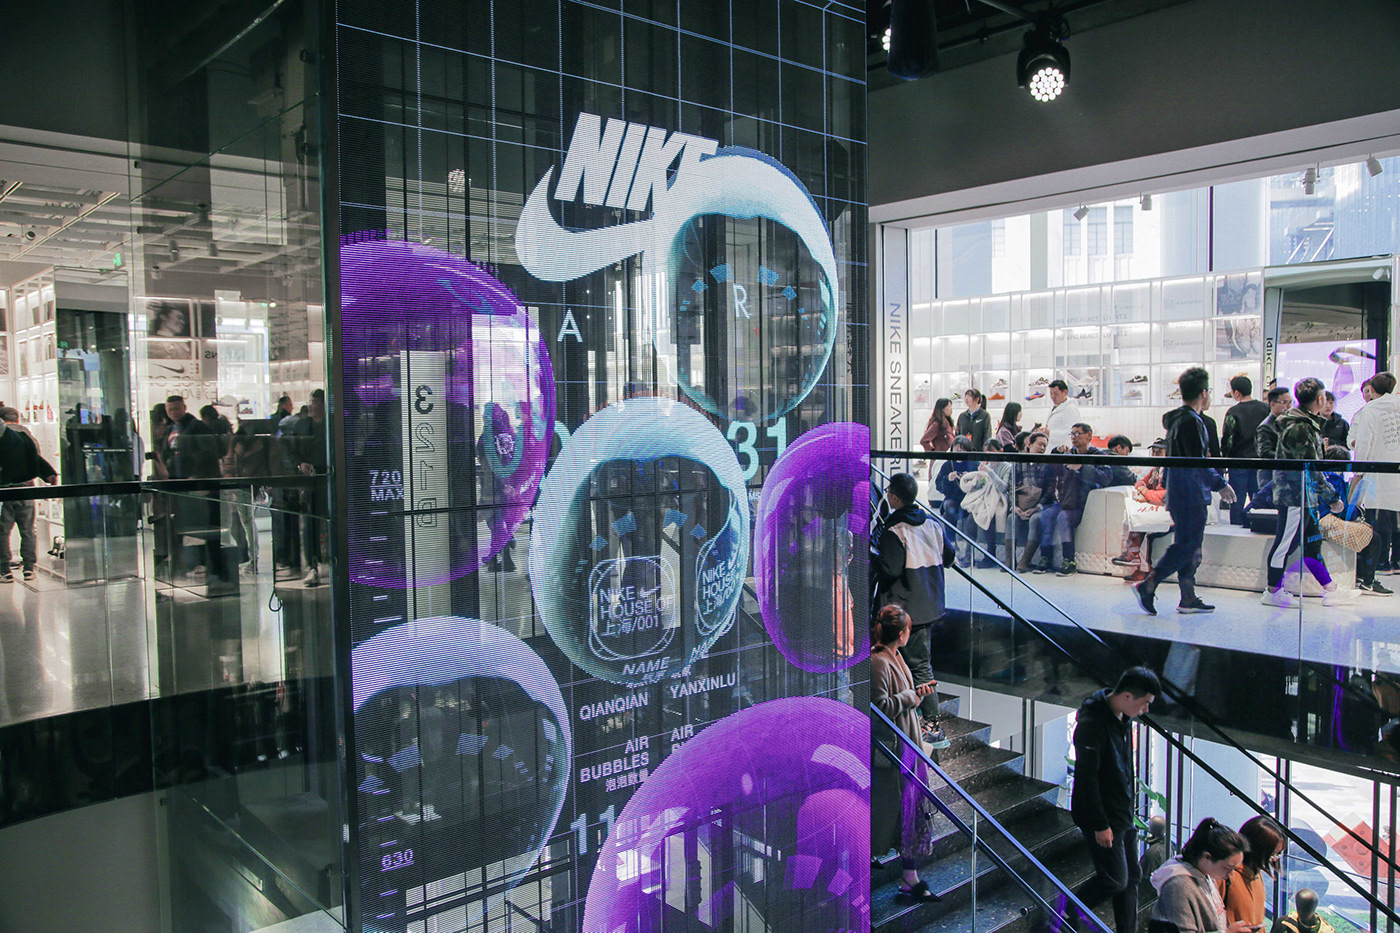 Màn hình led trong suốt tương tác được Nike sử dụng trong chiến dịch ra mắt sản phẩm mới thu hút người xem gây ấn tượng mạnh mẽ.